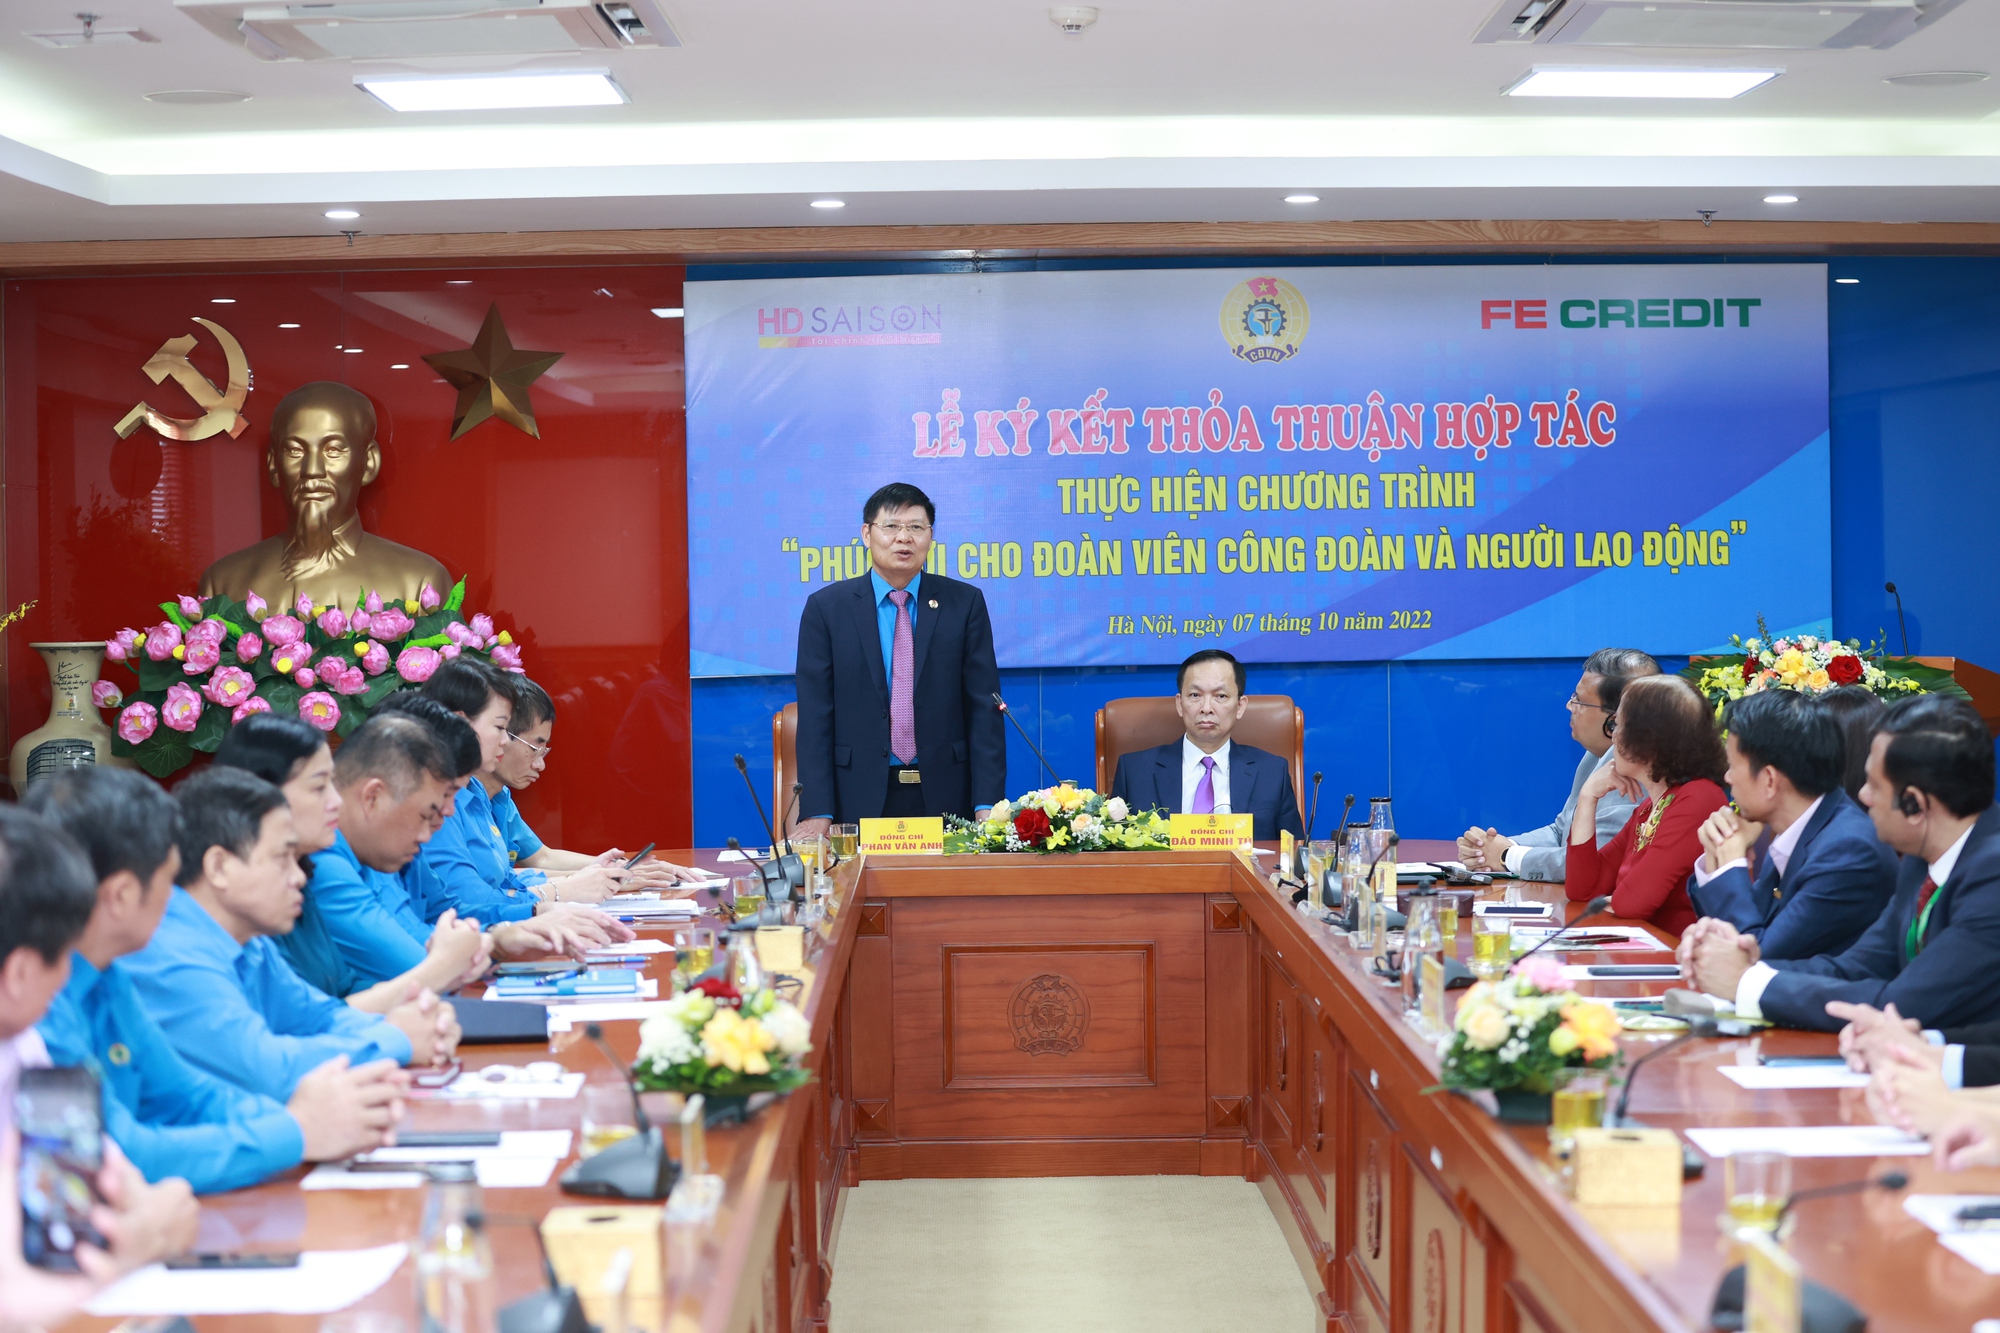 FE CREDIT ký kết thỏa thuận hợp tác cùng Tổng Liên đoàn Lao động Việt Nam - Ảnh 2.